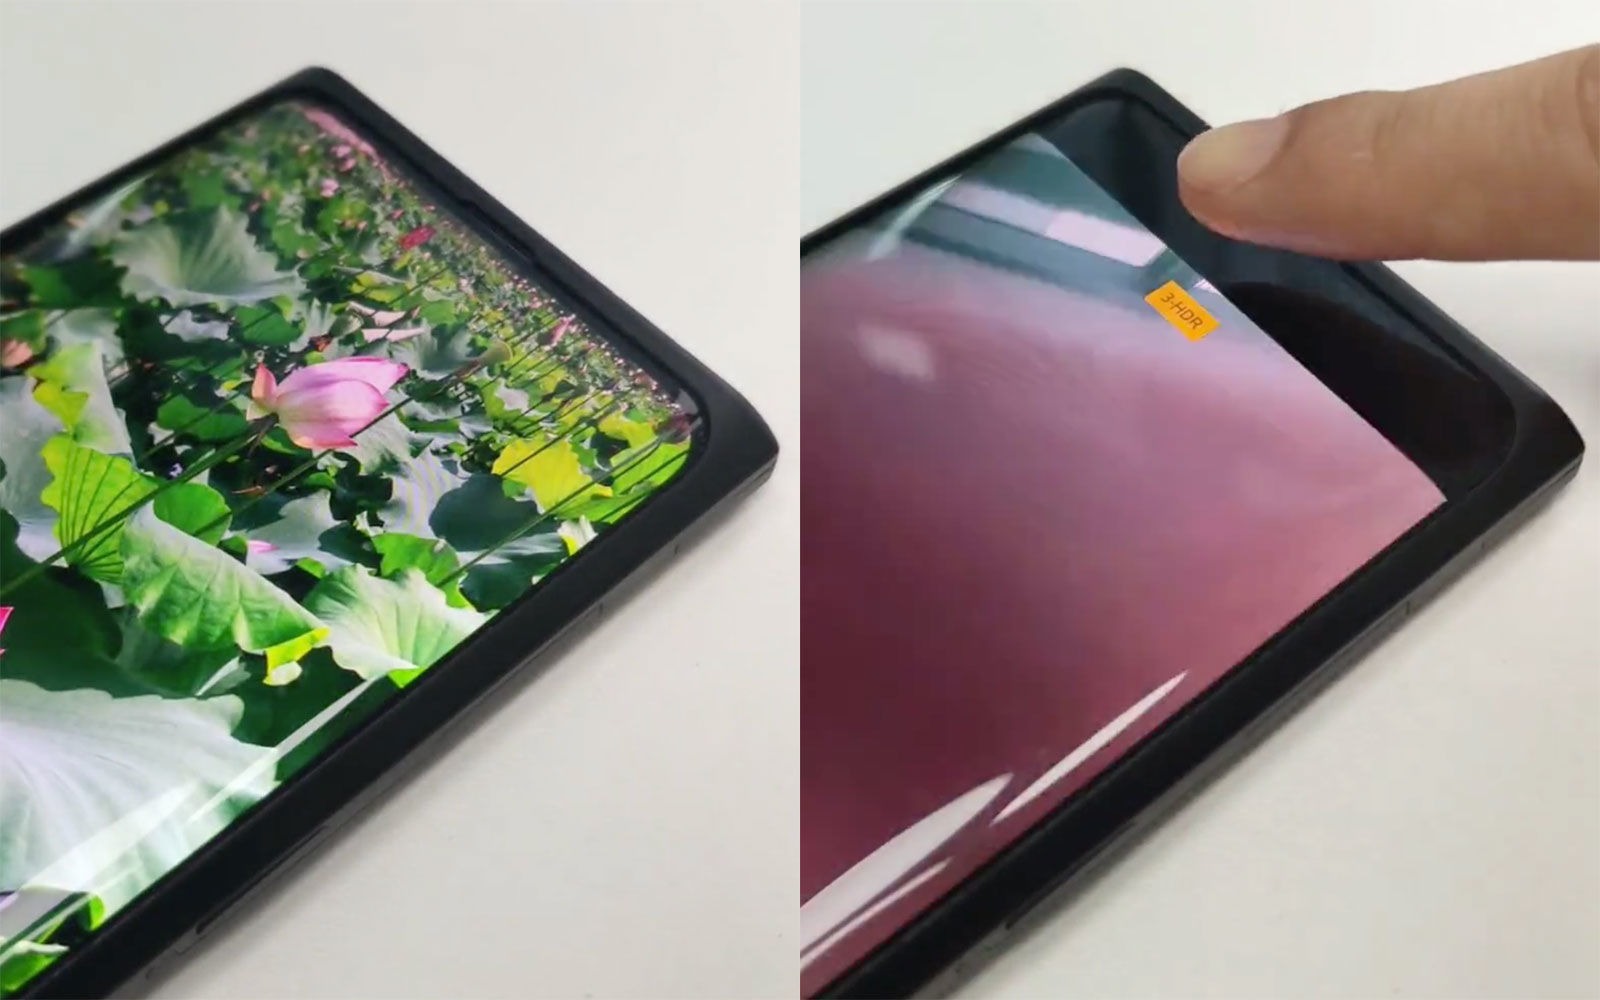 Phó chủ tịch Xiaomi cho biết công nghệ camera dưới màn hình vẫn chưa sẵn sàng